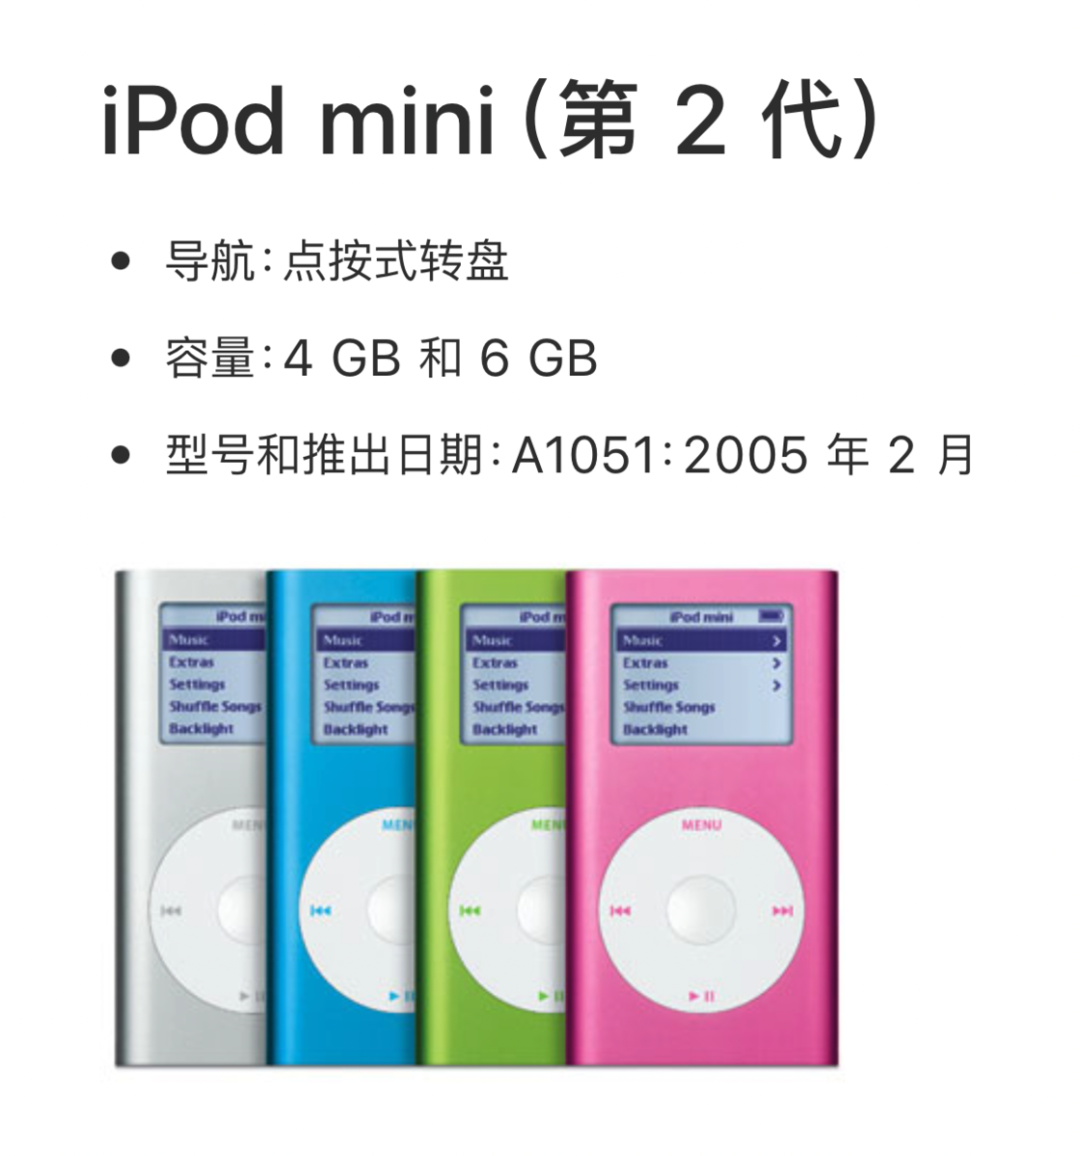 iPod mini 最大也只有 6GB